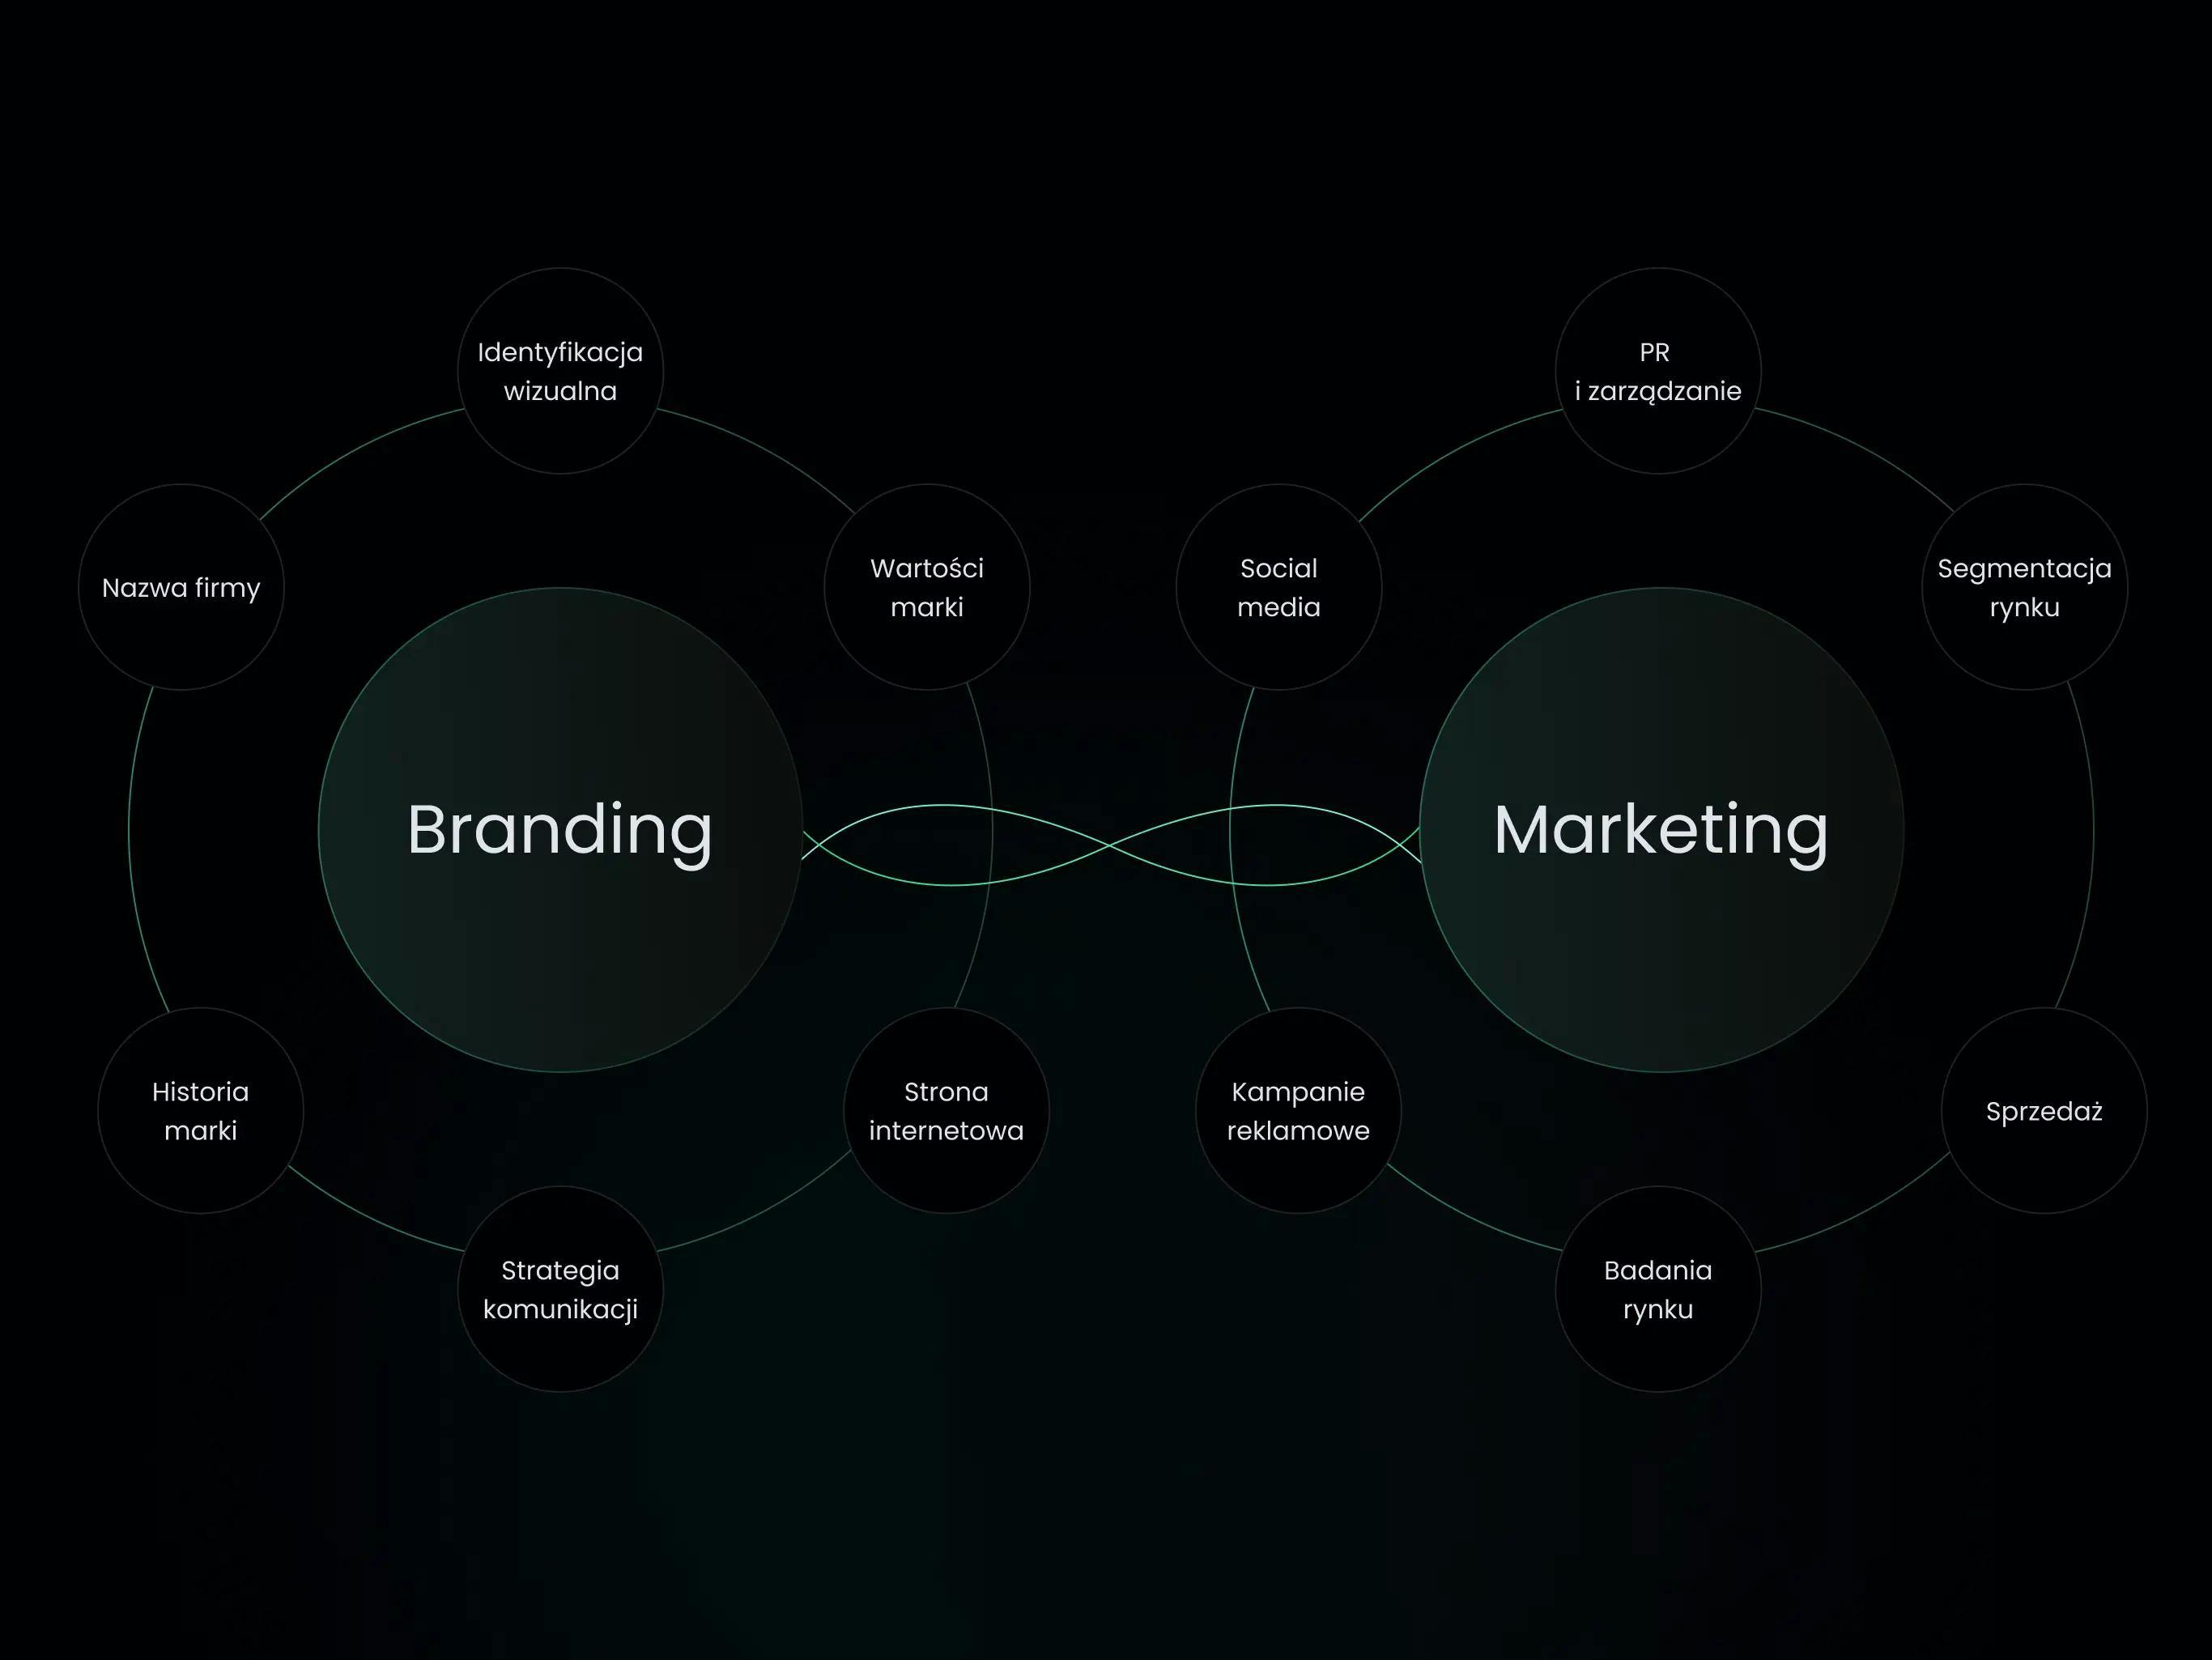 Słowa branding oraz marketing w okręgach, a wokół ich elementy, całość nawiązuje do podobieństwa między nimi.